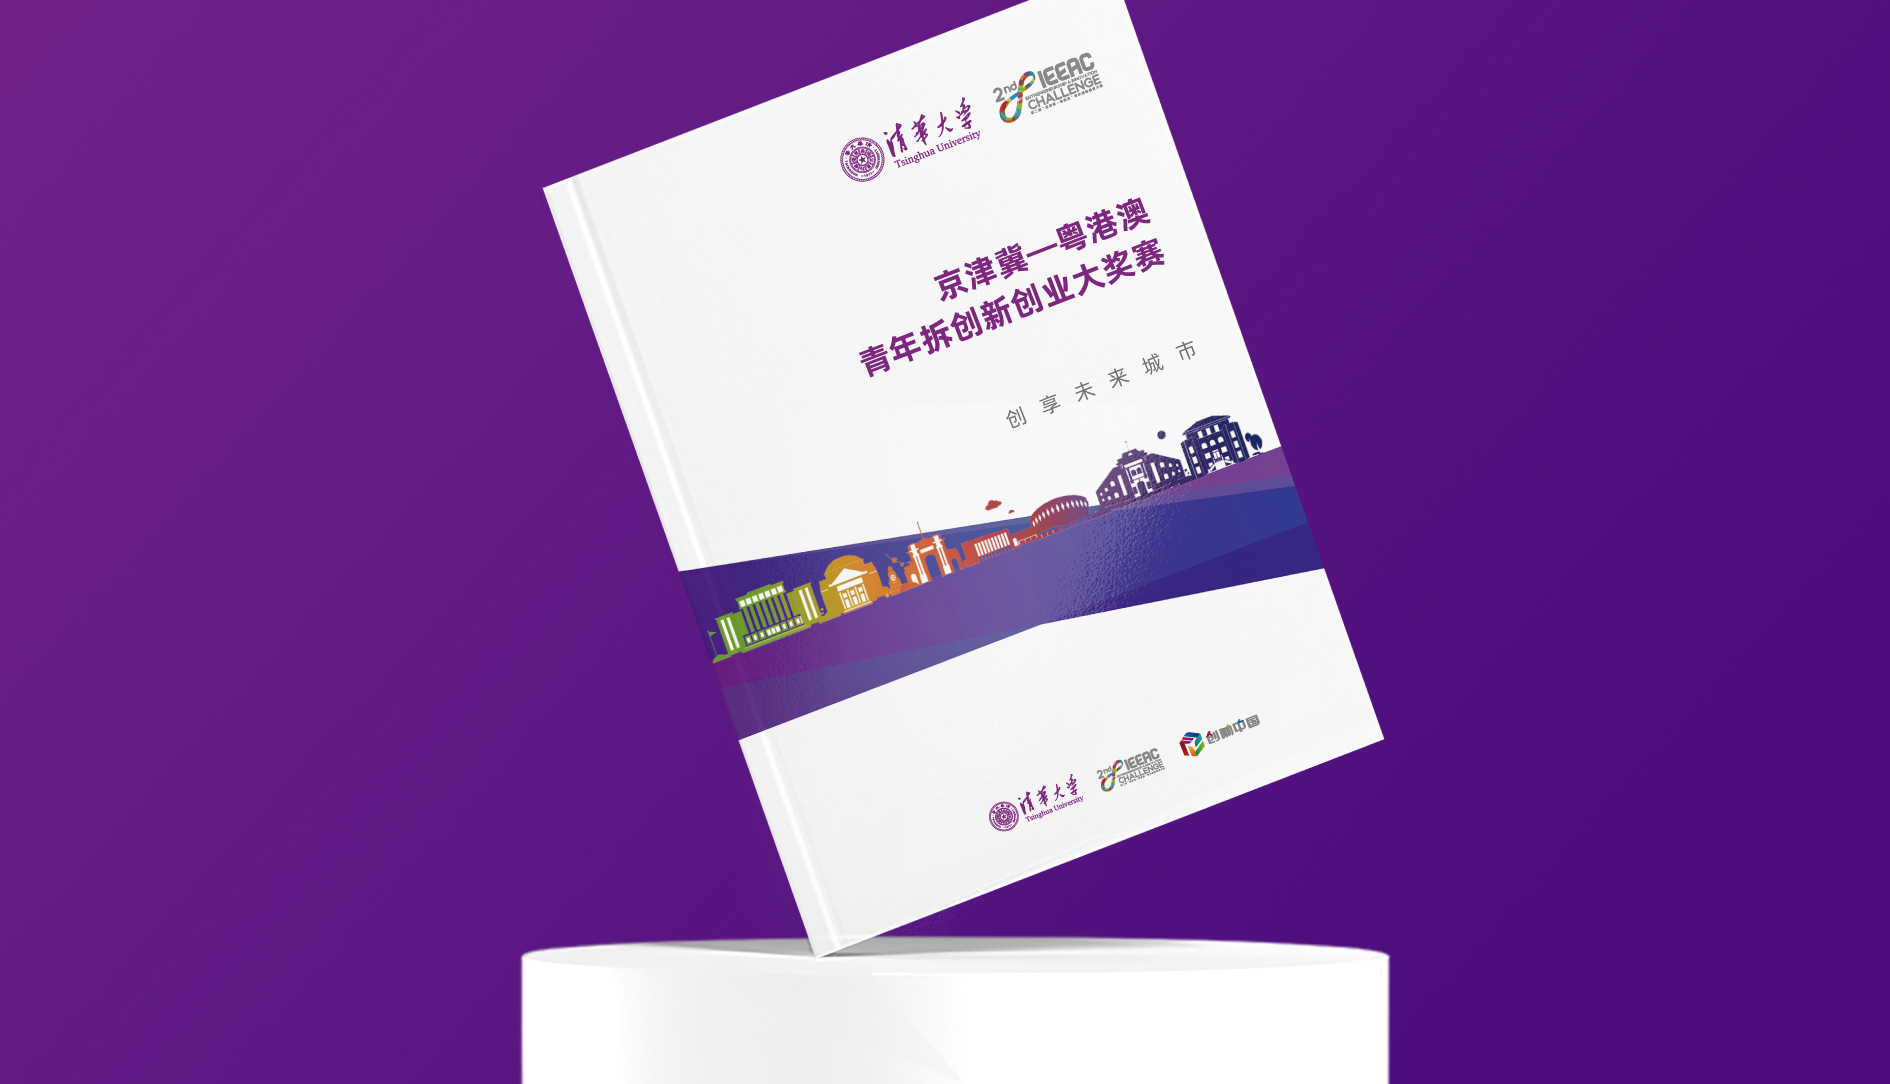 清华大学工匠联盟宣传册设计